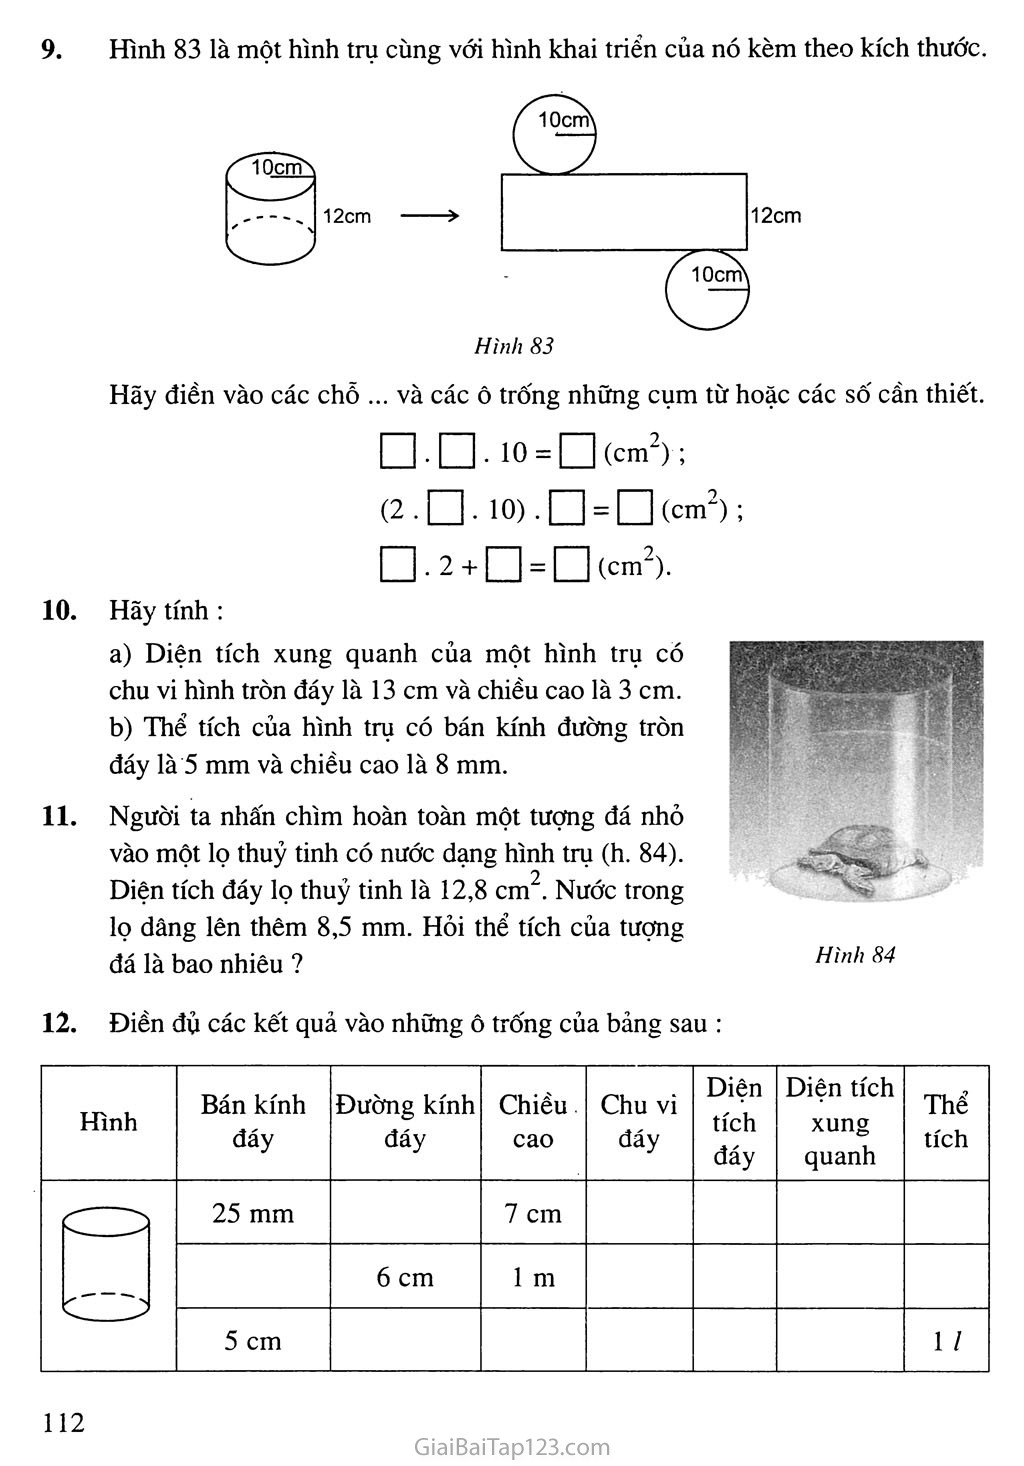 Bài 1. Hình trụ - Diện tích xung quanh và thể tích của hình trụ trang 7